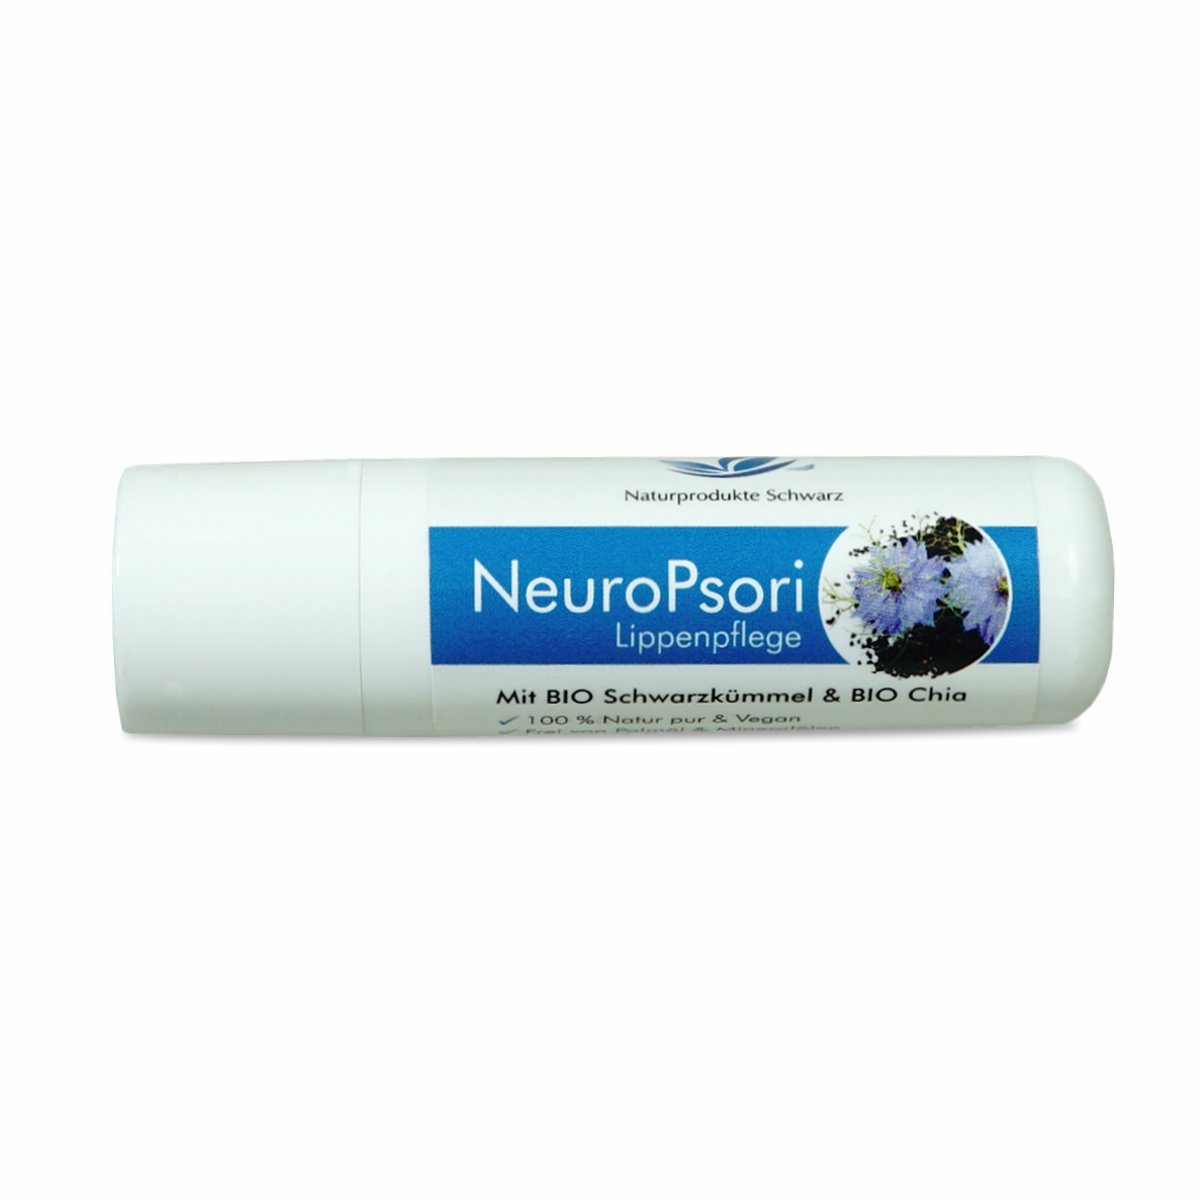 NeuroPsori Lippenpflege - Bei Neurodermitis und Psoriasis - Ohne Parfum - Ohne Mineralöl